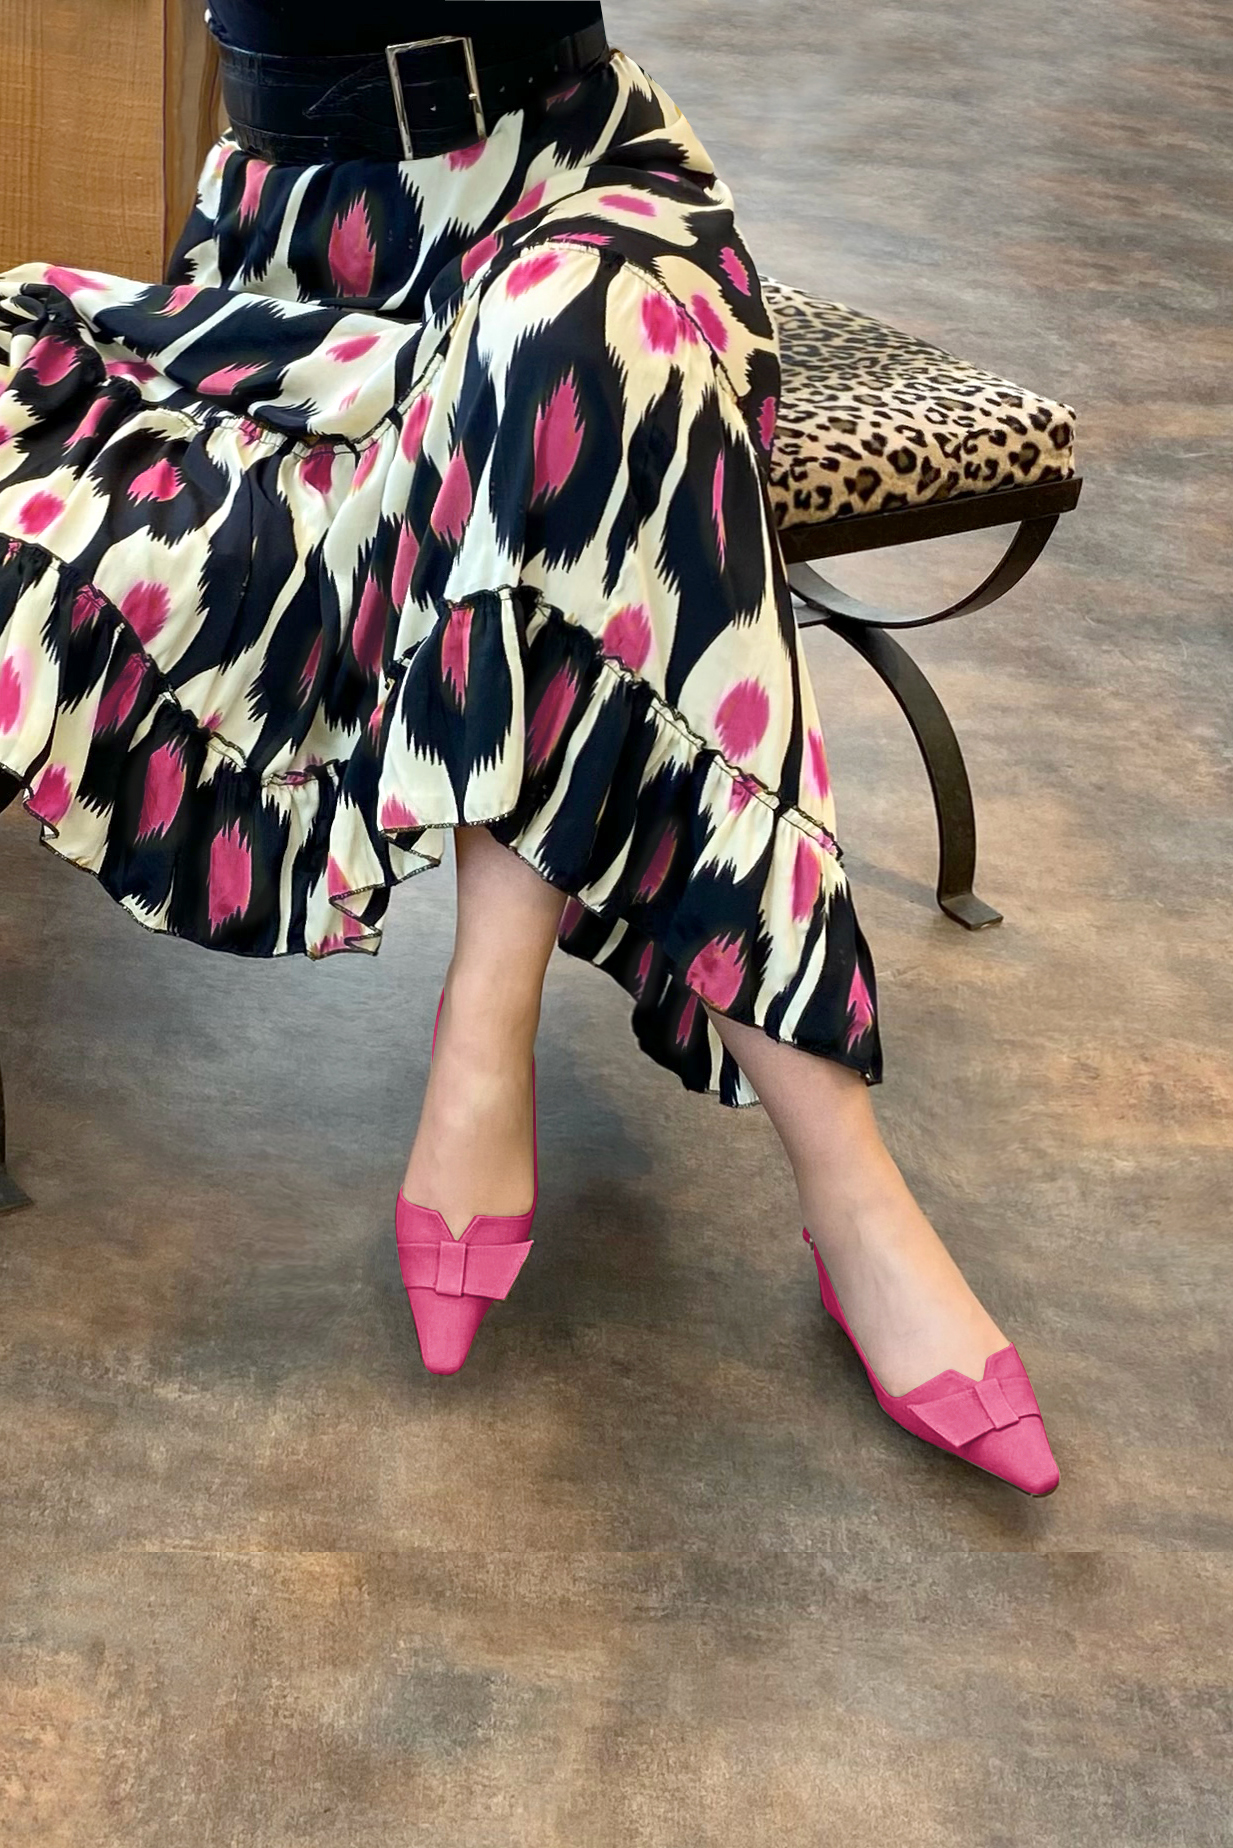 Chaussure femme à brides :  couleur rose pétunia. Bout effilé. Petit talon bottier. Vue porté - Florence KOOIJMAN